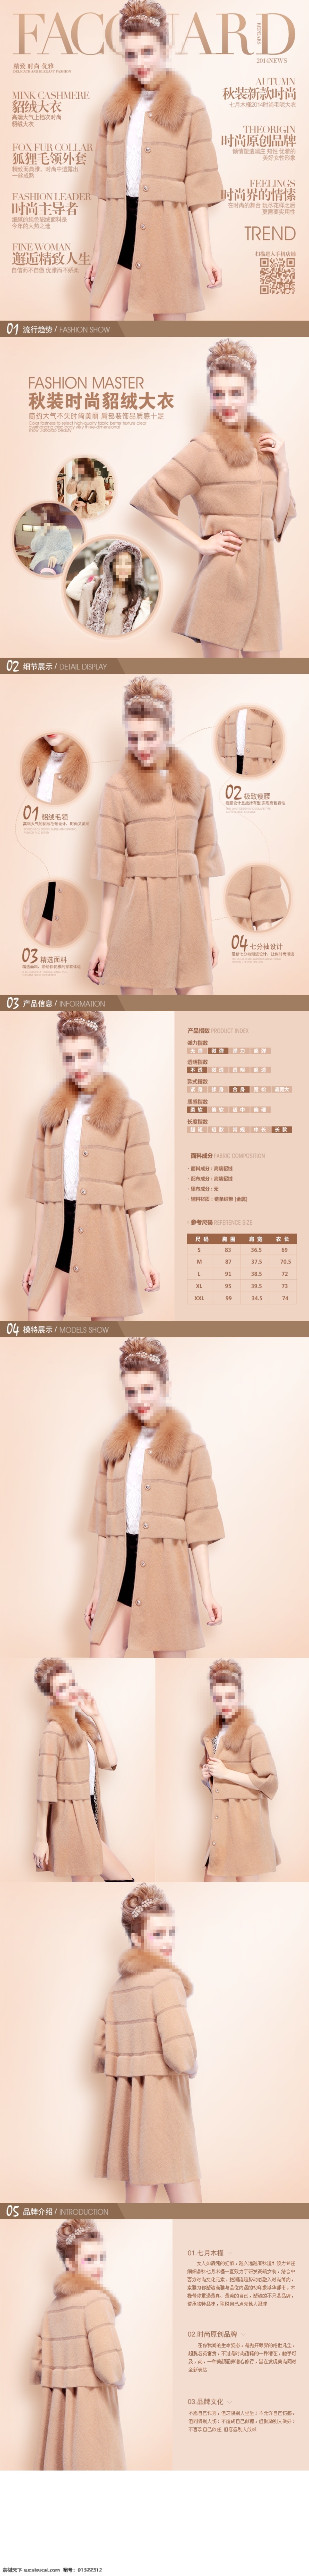 狐狸 毛领 外套 大衣 女性 女装 时尚 毛领外套 精致人生 原创设计 原创淘宝设计